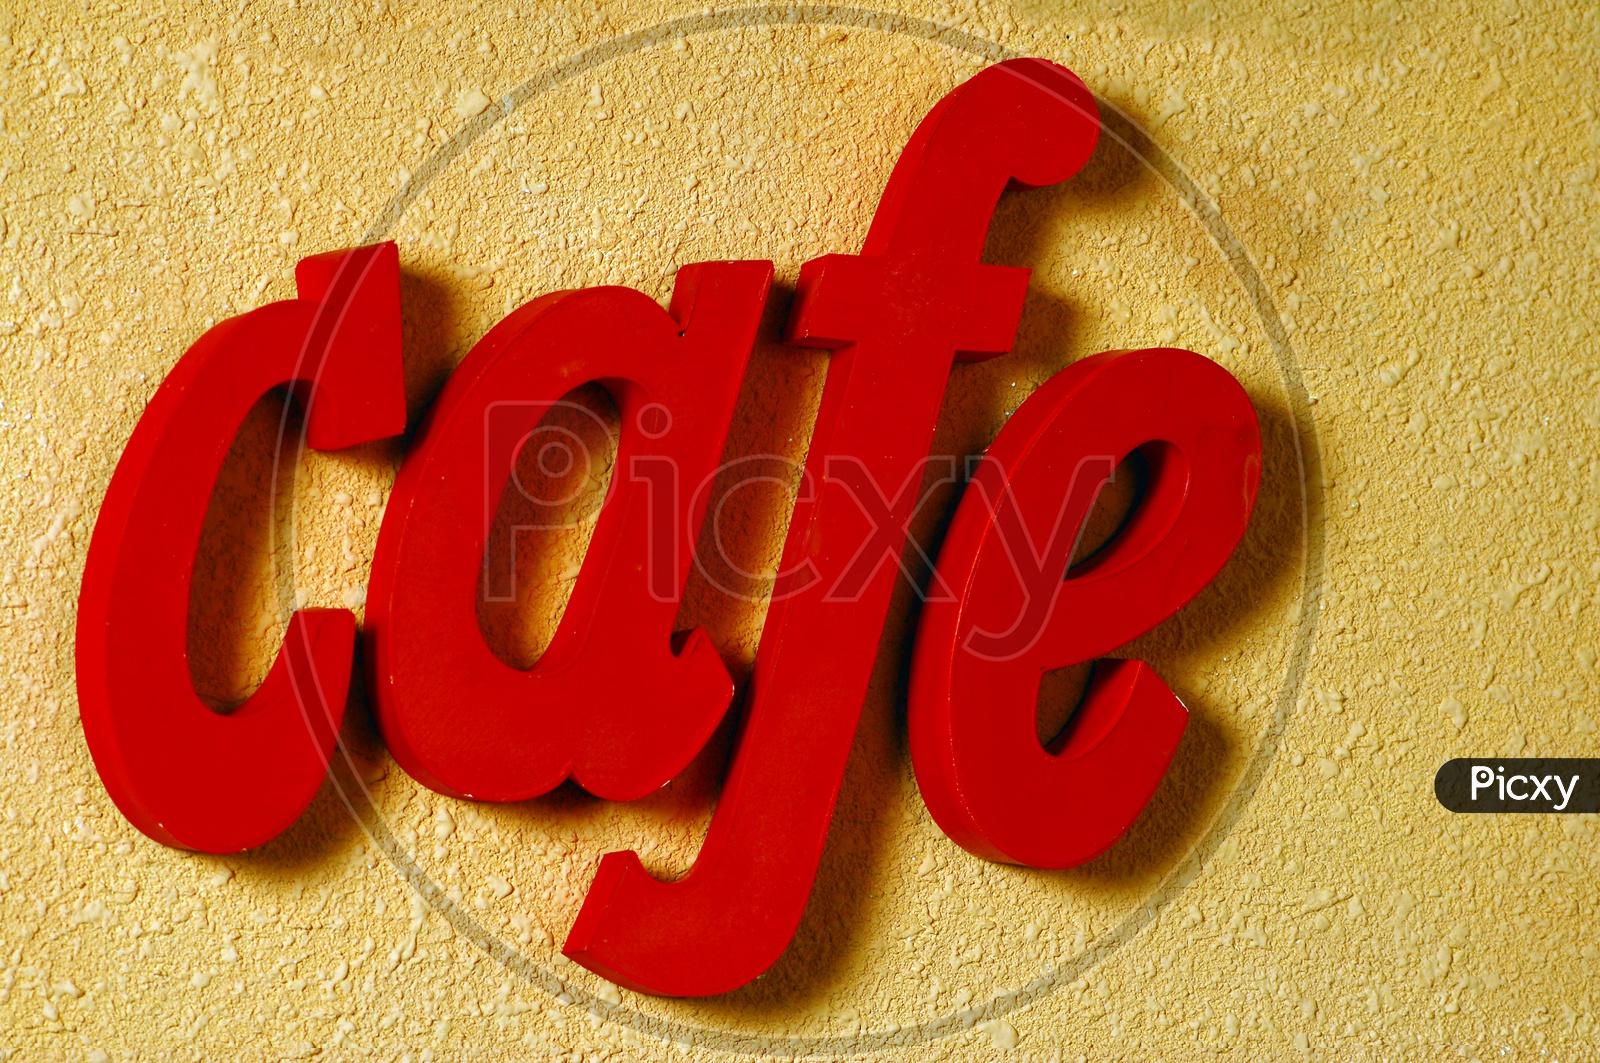 Cafe Name